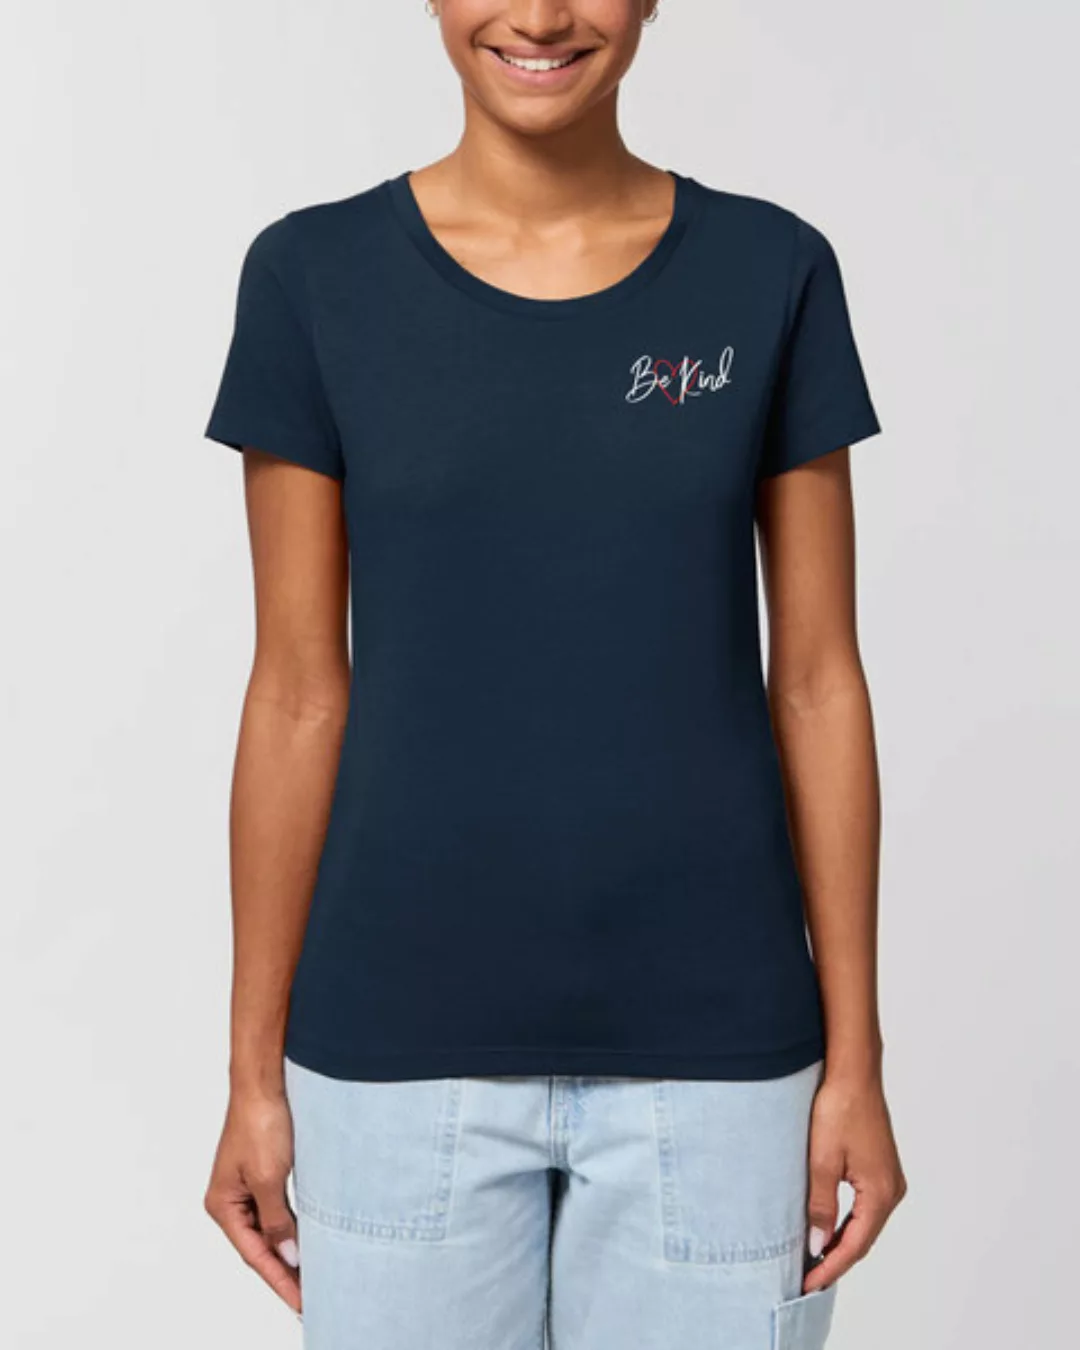 Bio Damen Rundhals T-shirt Amorous "Be Kind" Von Human Family günstig online kaufen